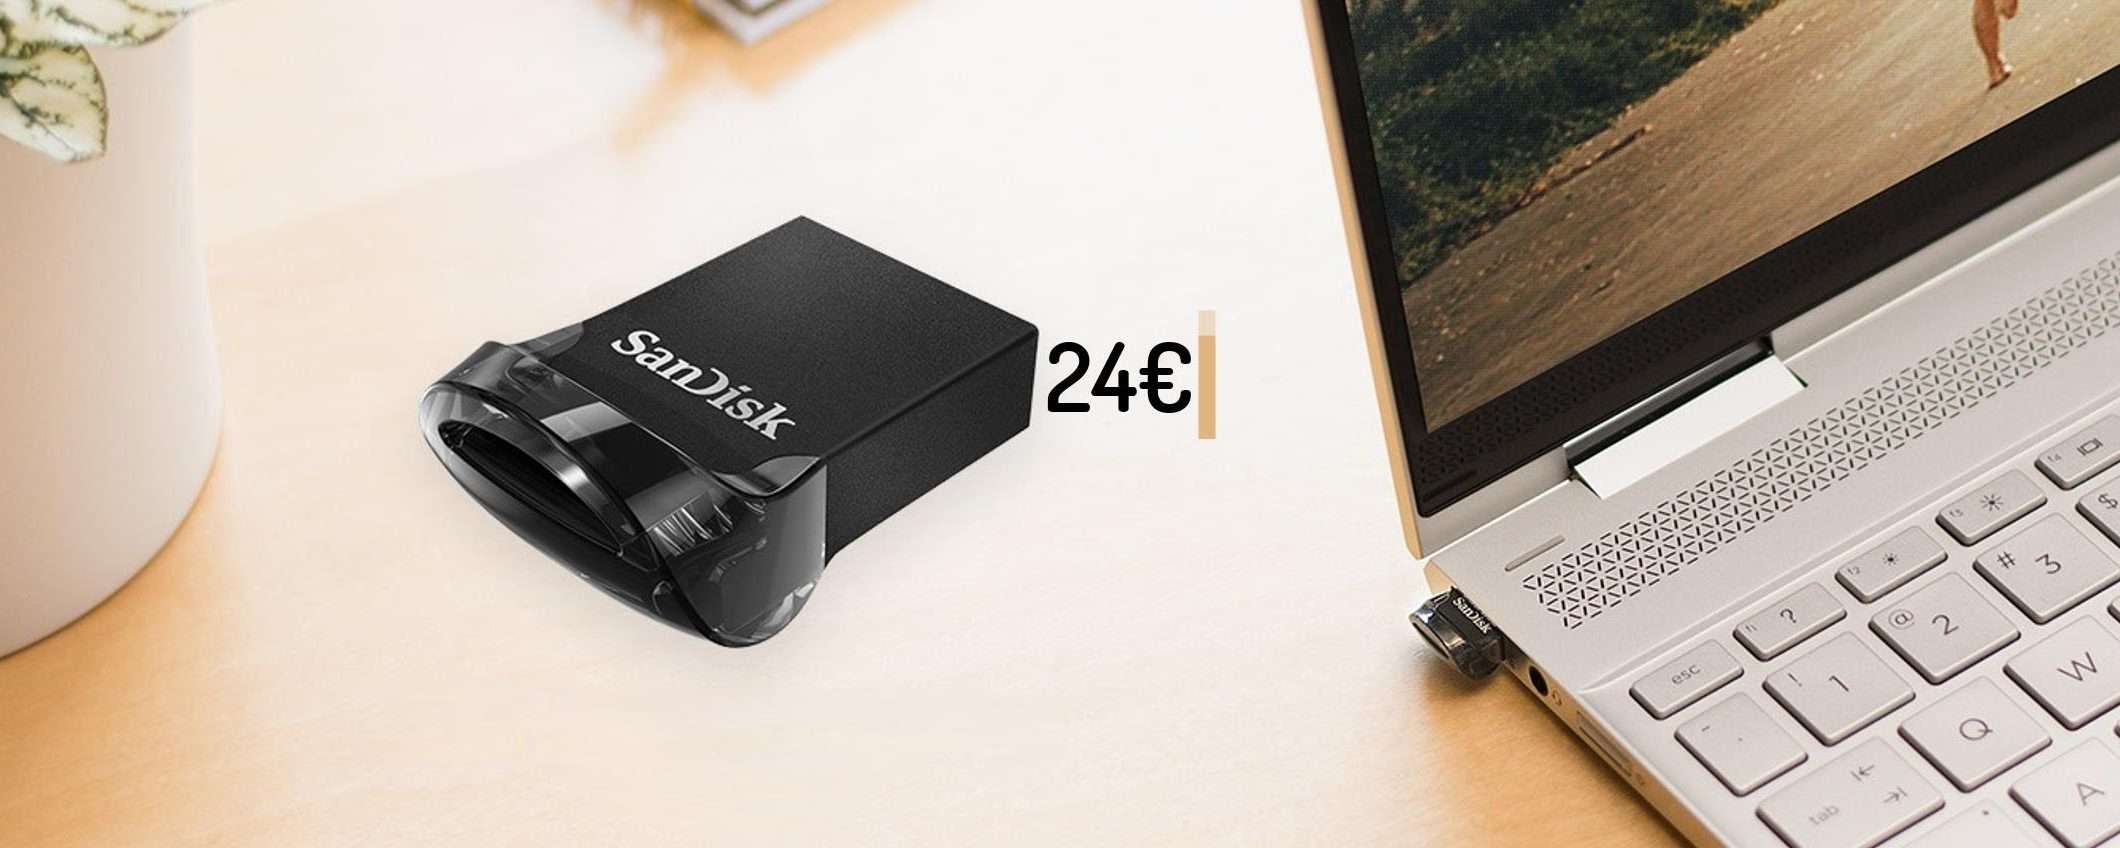 Chiavetta USB 256GB: veloce e piccola come una moneta (24€)